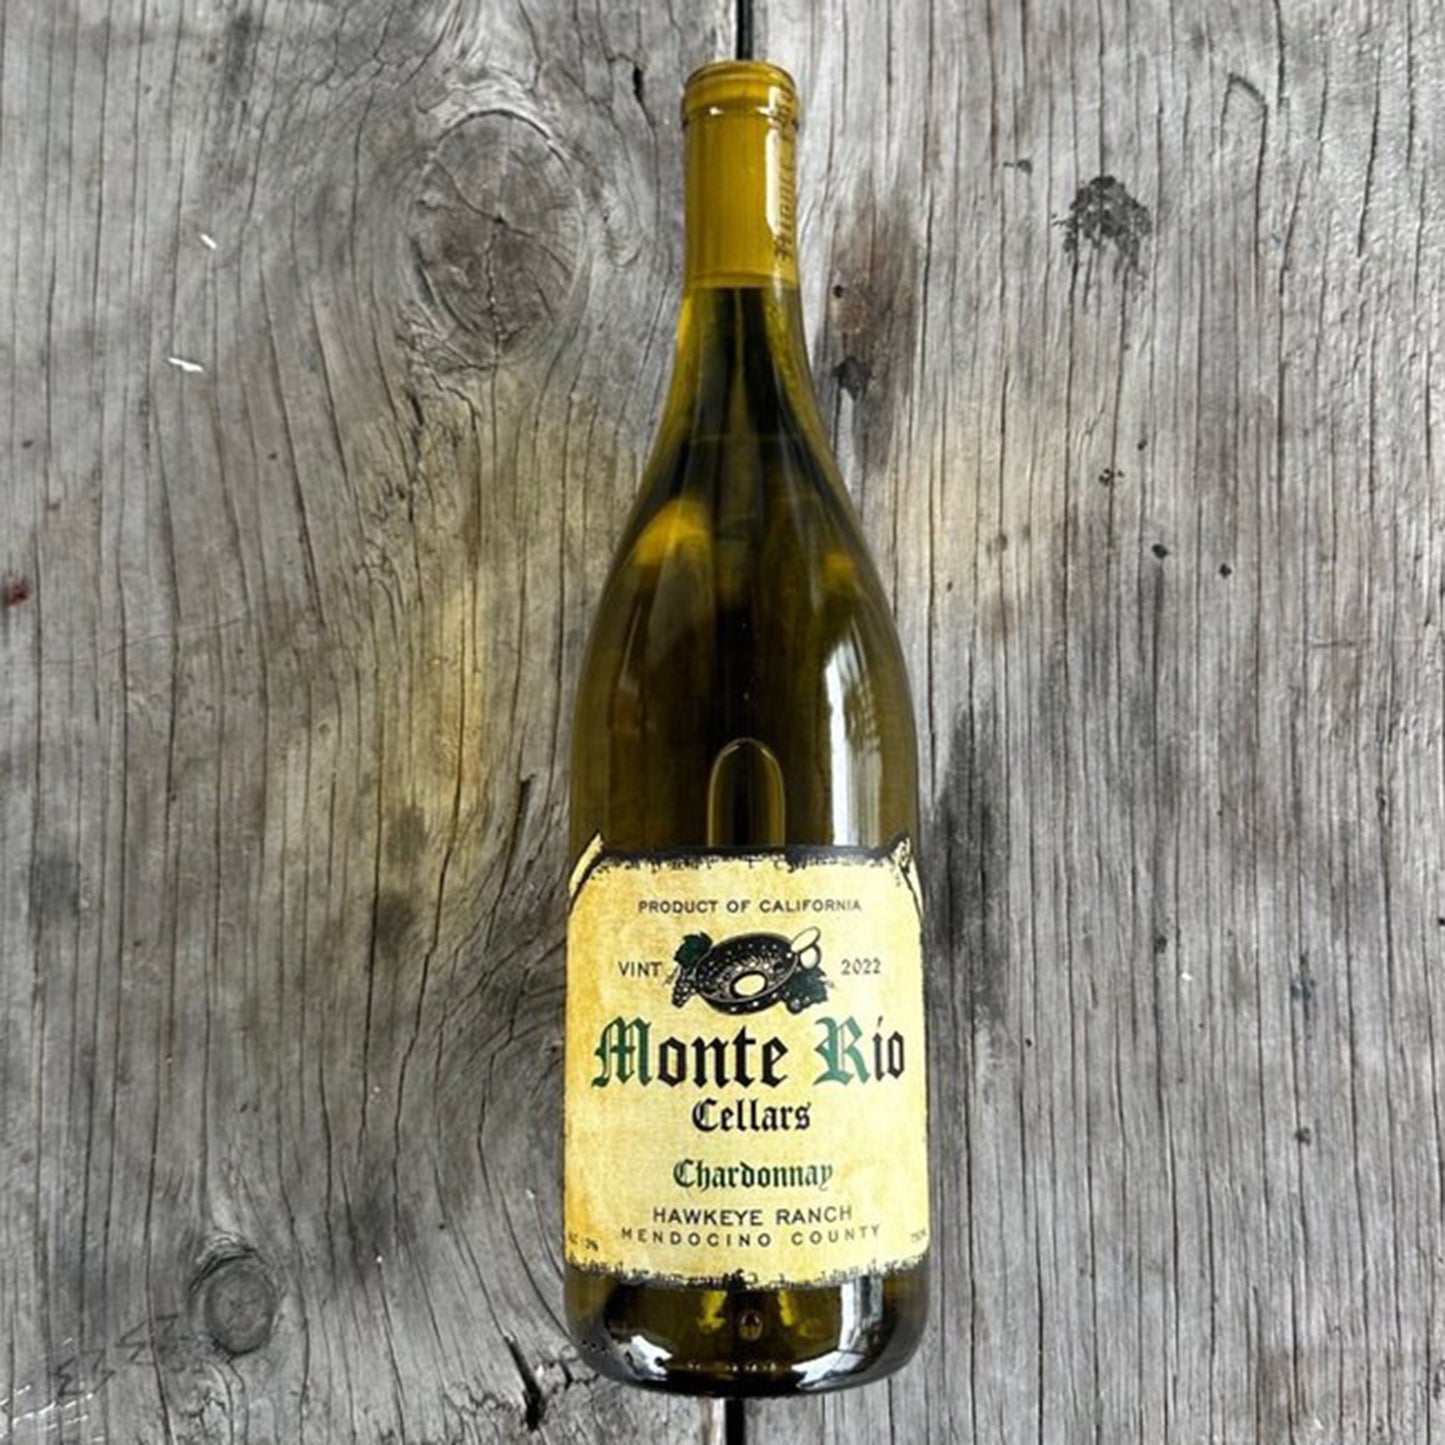 Monte Rio Chardonnay 'Hawkeye Ranch' Mendocino 2022 (750 ml)